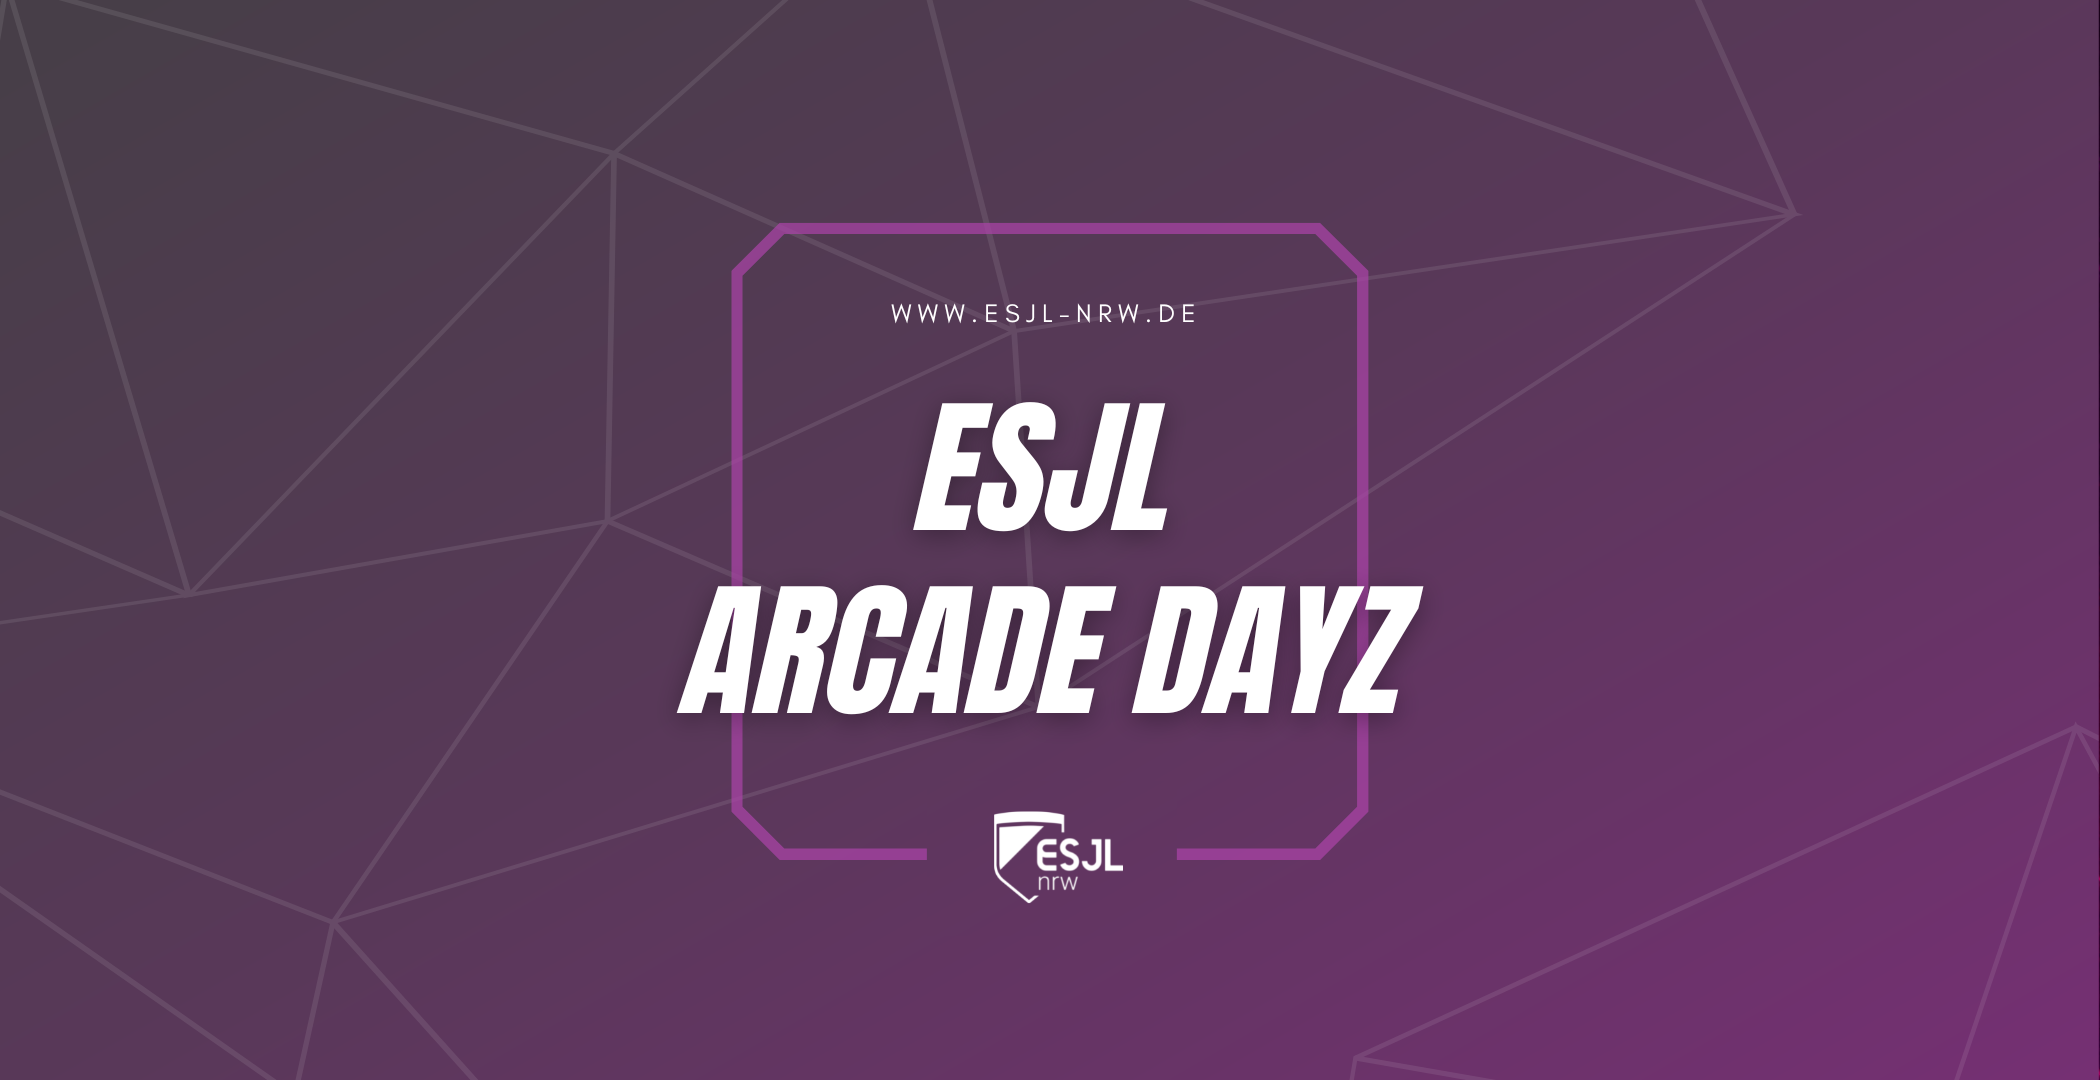 Zu sehen ist ein Banner der ESJL Arcade Dayz im lila Design des Projekts.